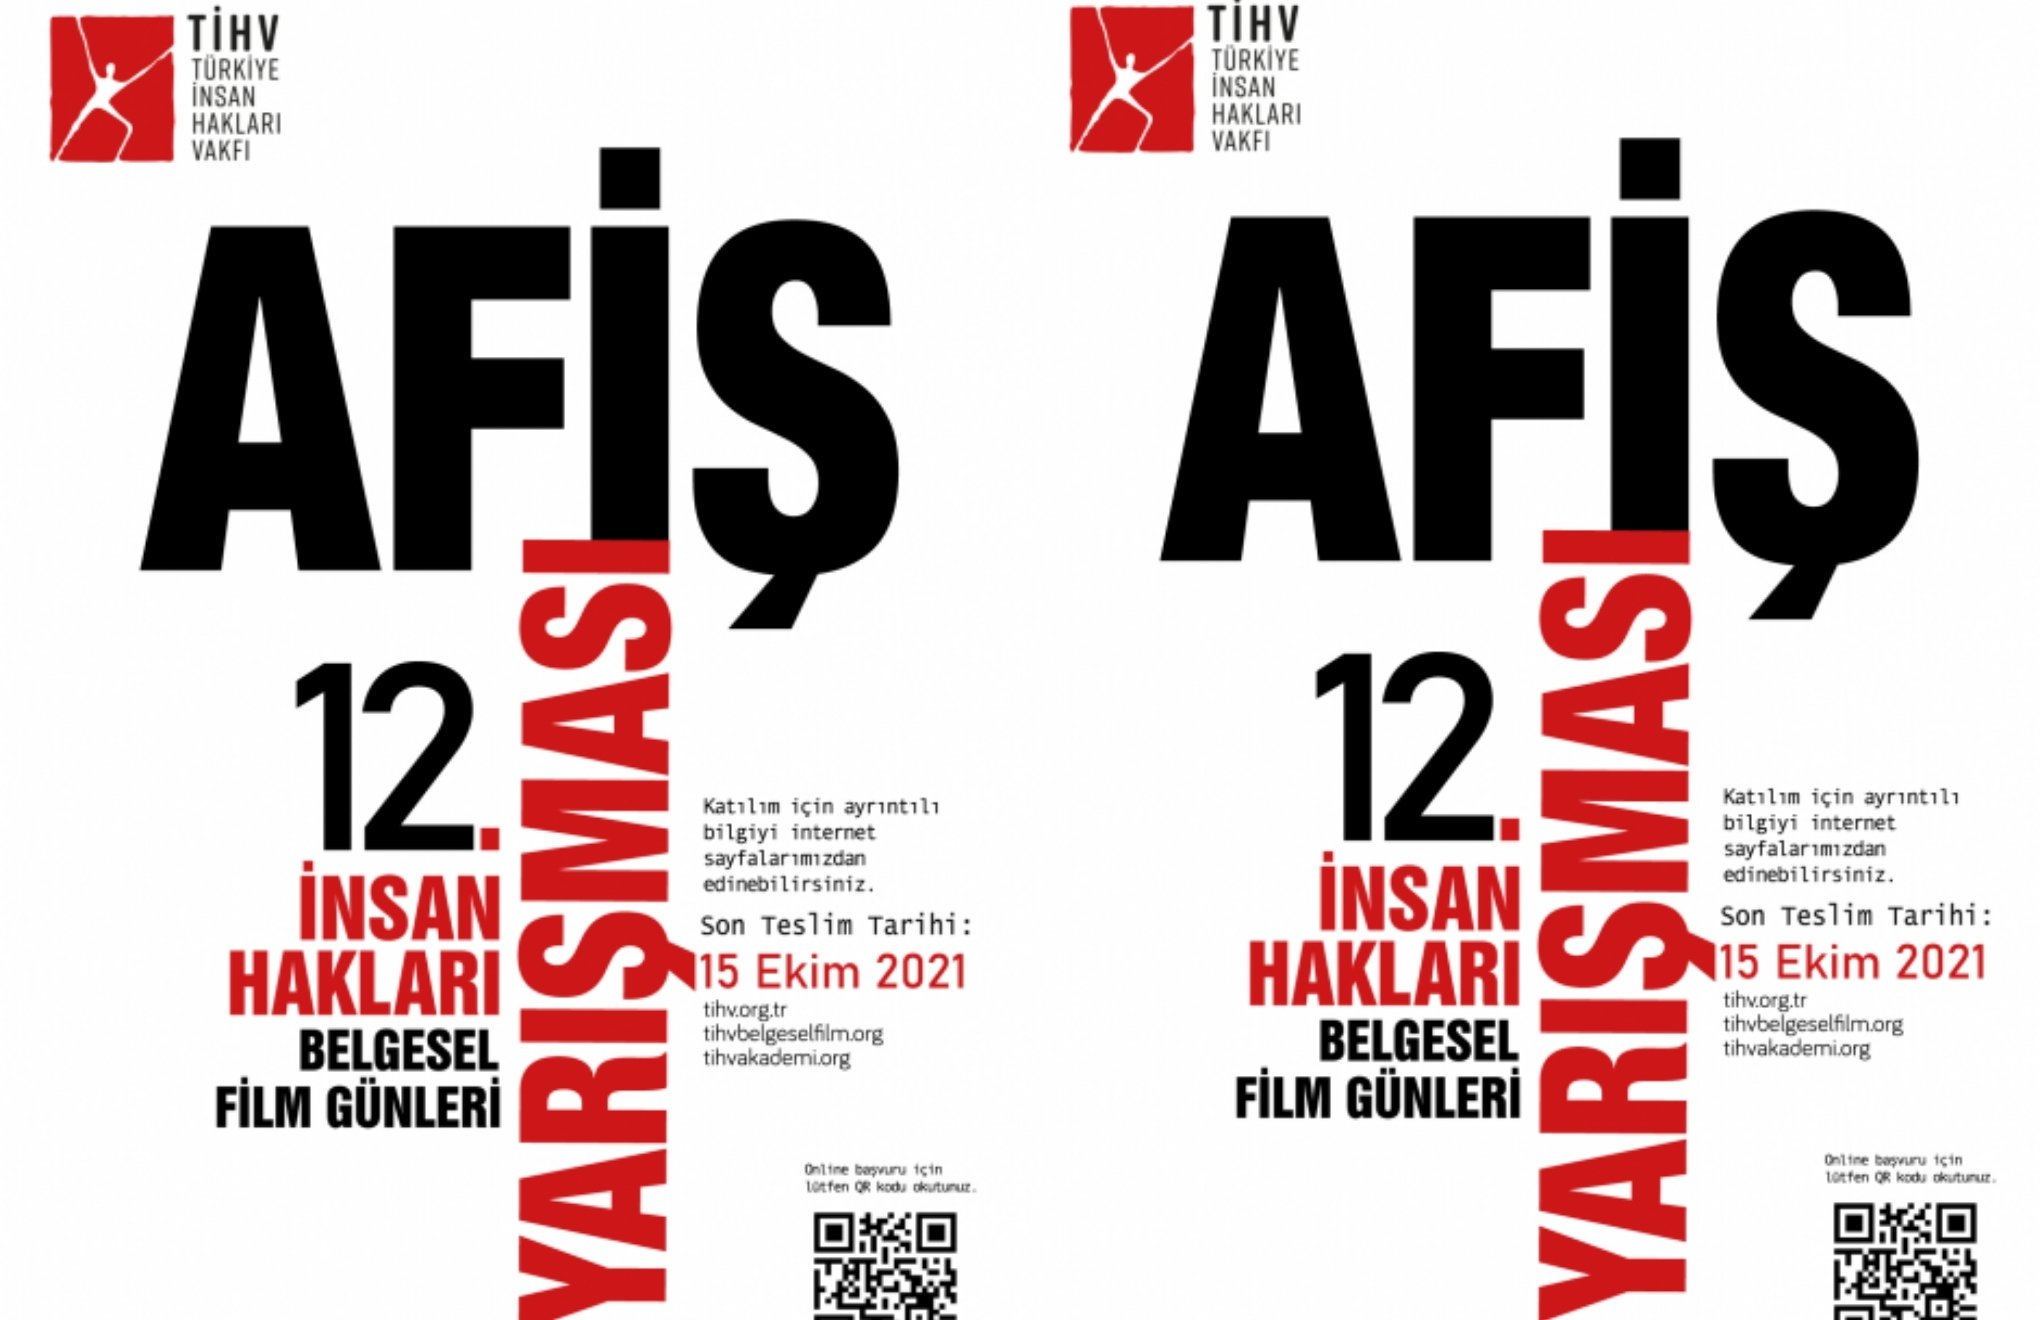 TİHV’den belgesel film günleri afiş yarışması